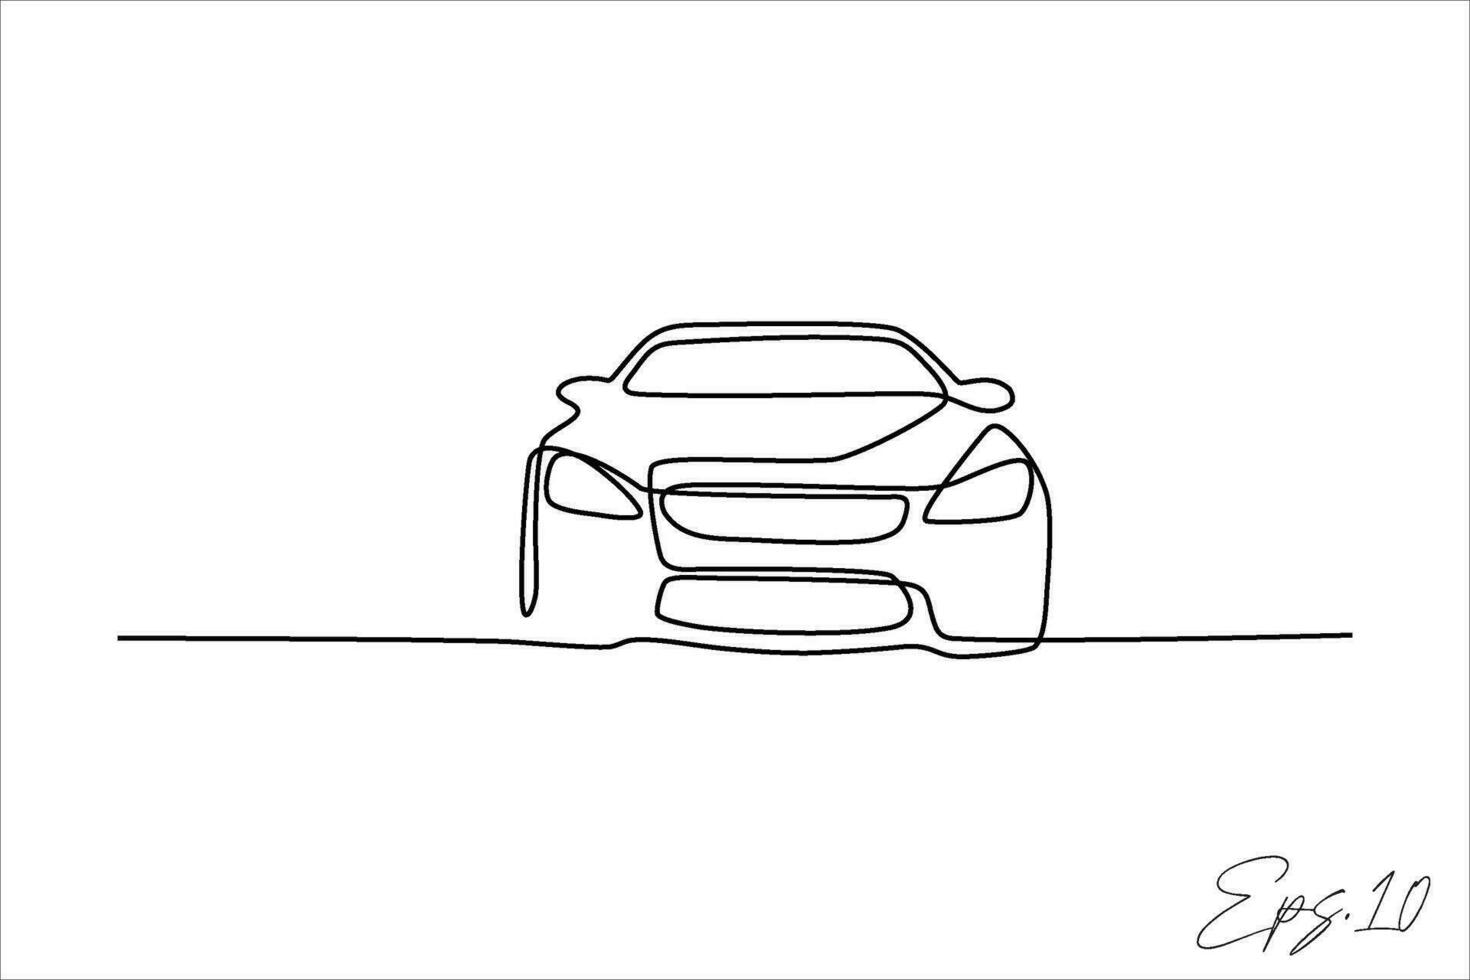 continuo linea vettore illustrazione design di berlina auto